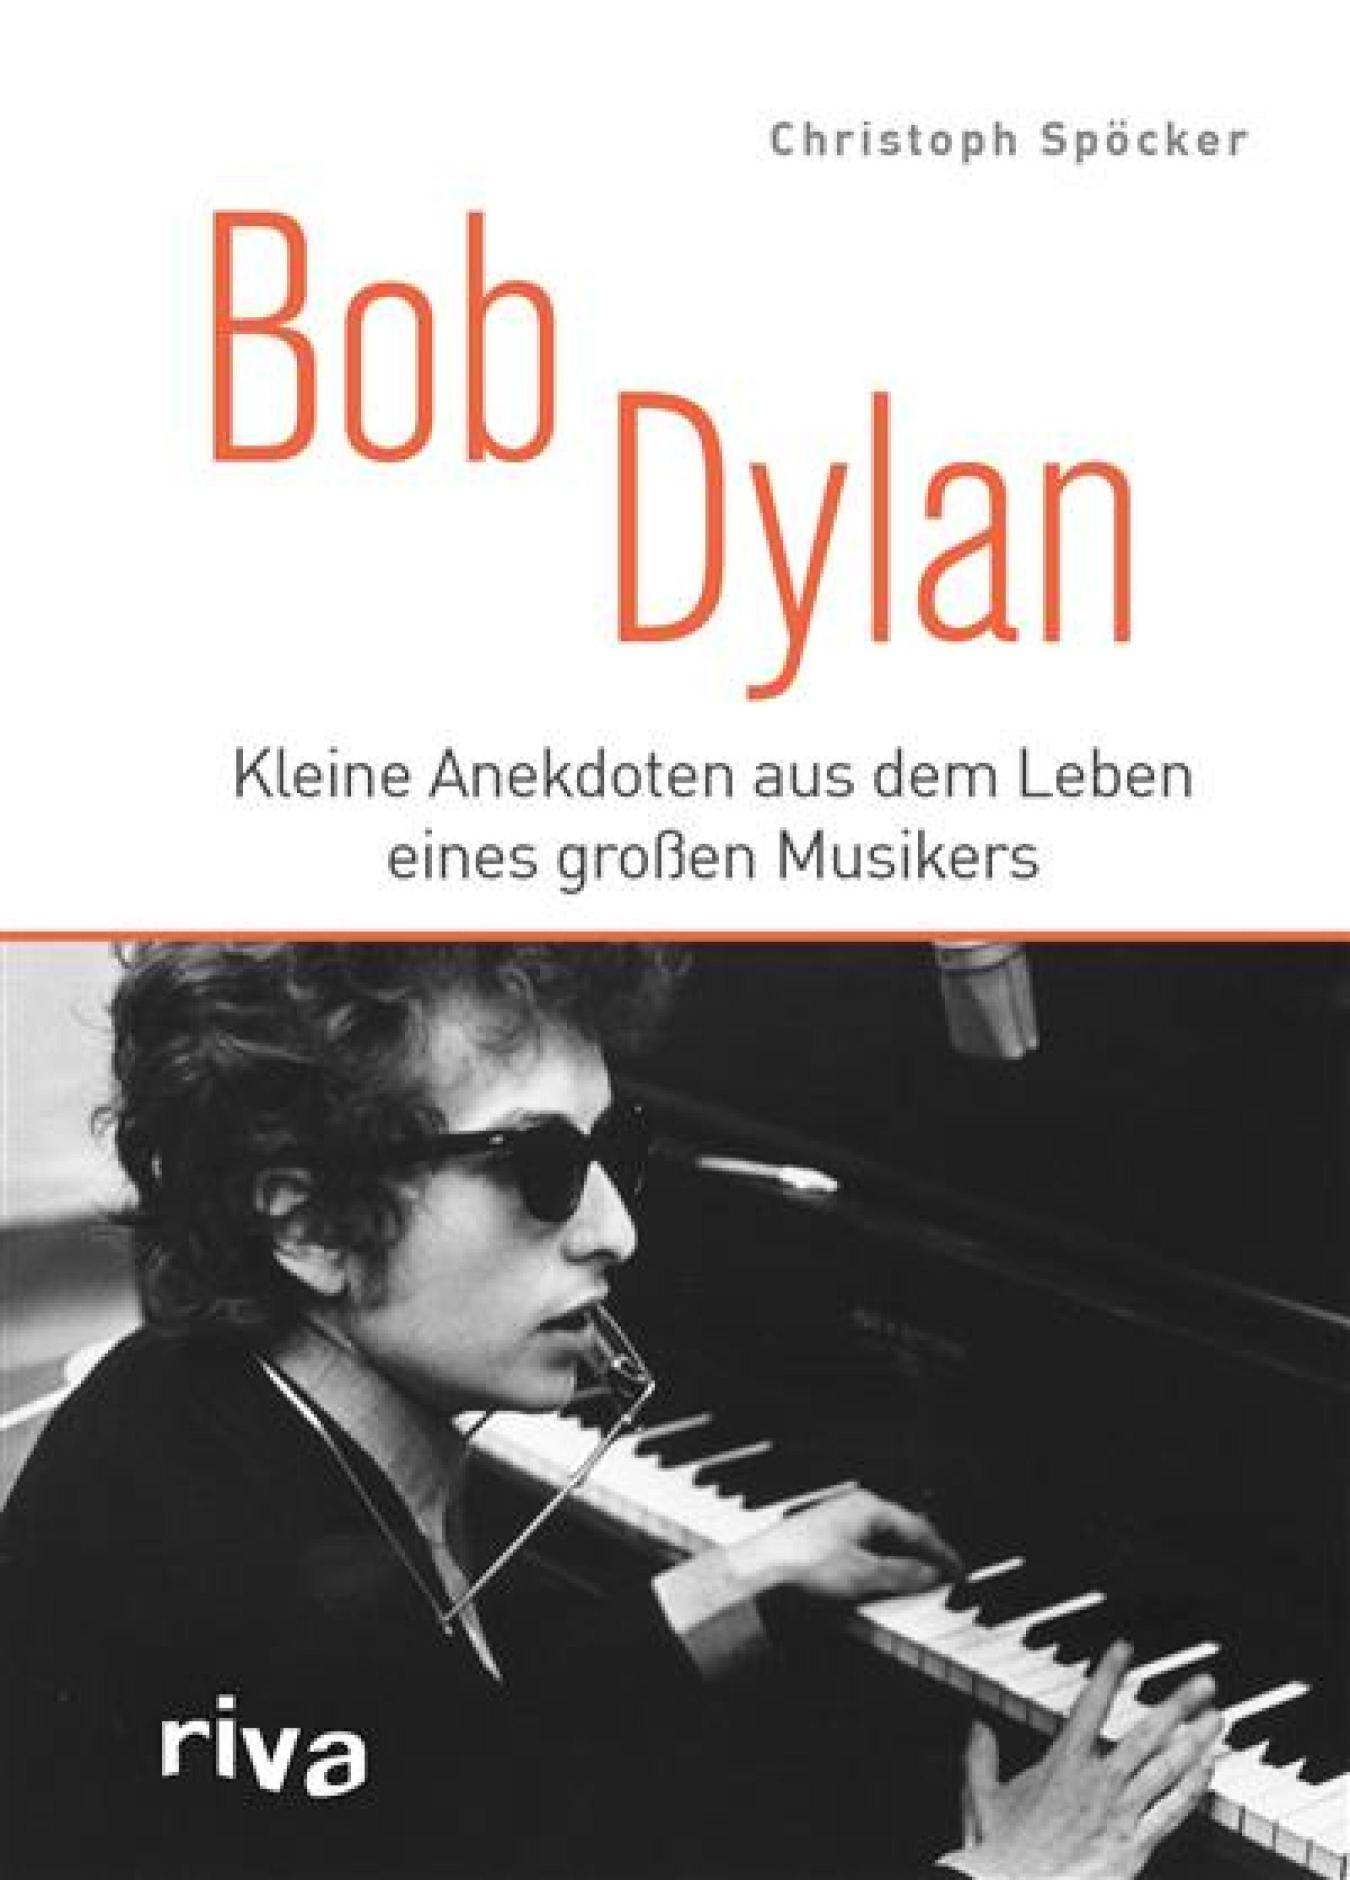 Bob Dylan Kleine Anekdoten aus dem Leben eines großen Musikers